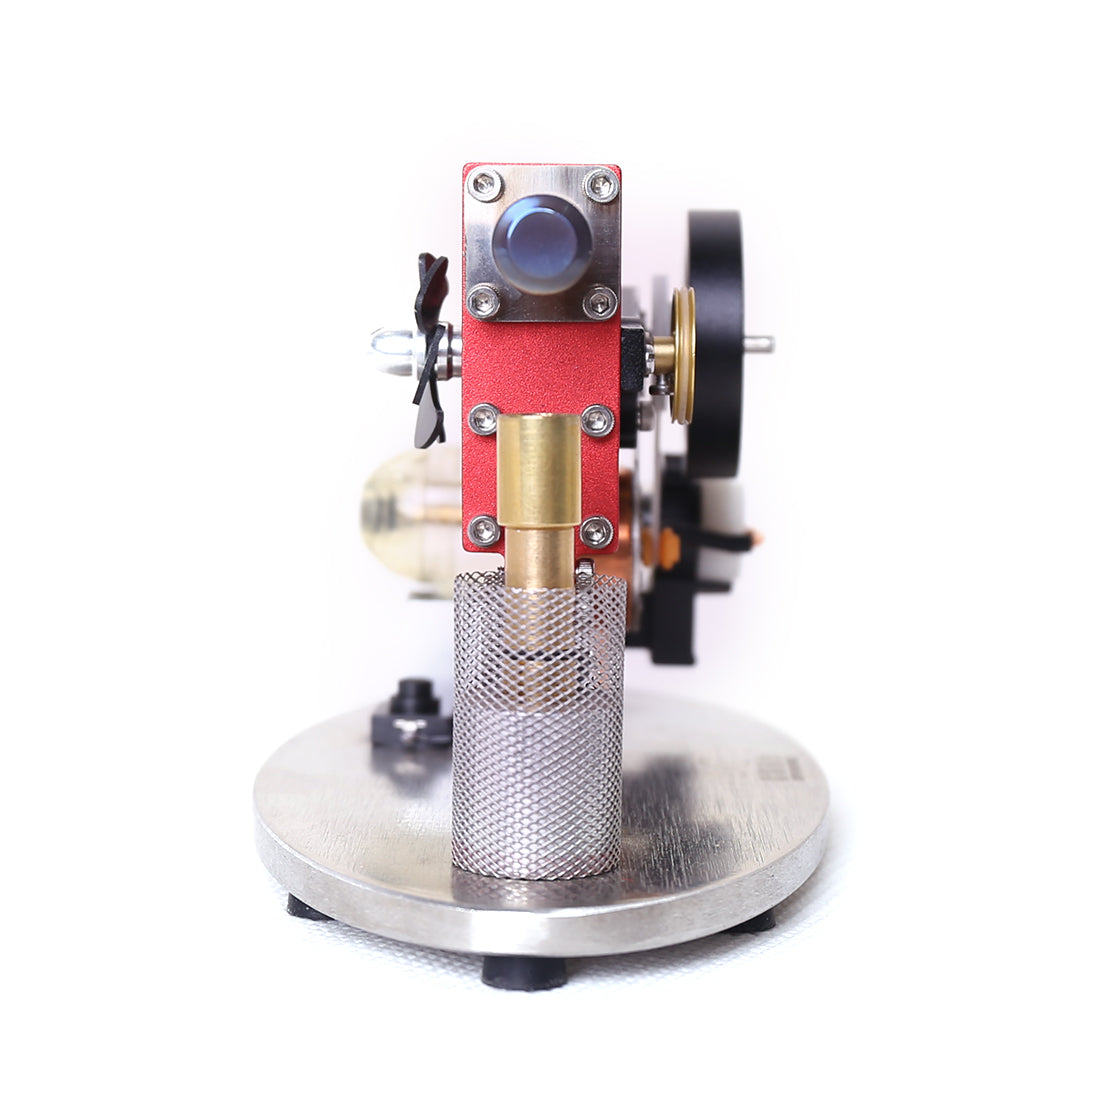 α Type Double Cylinder Stirling Engine Generator Model with LED Lamp Beads, Voltage Display Meter, Double Piston Rocker Arm Linkage - enginediy